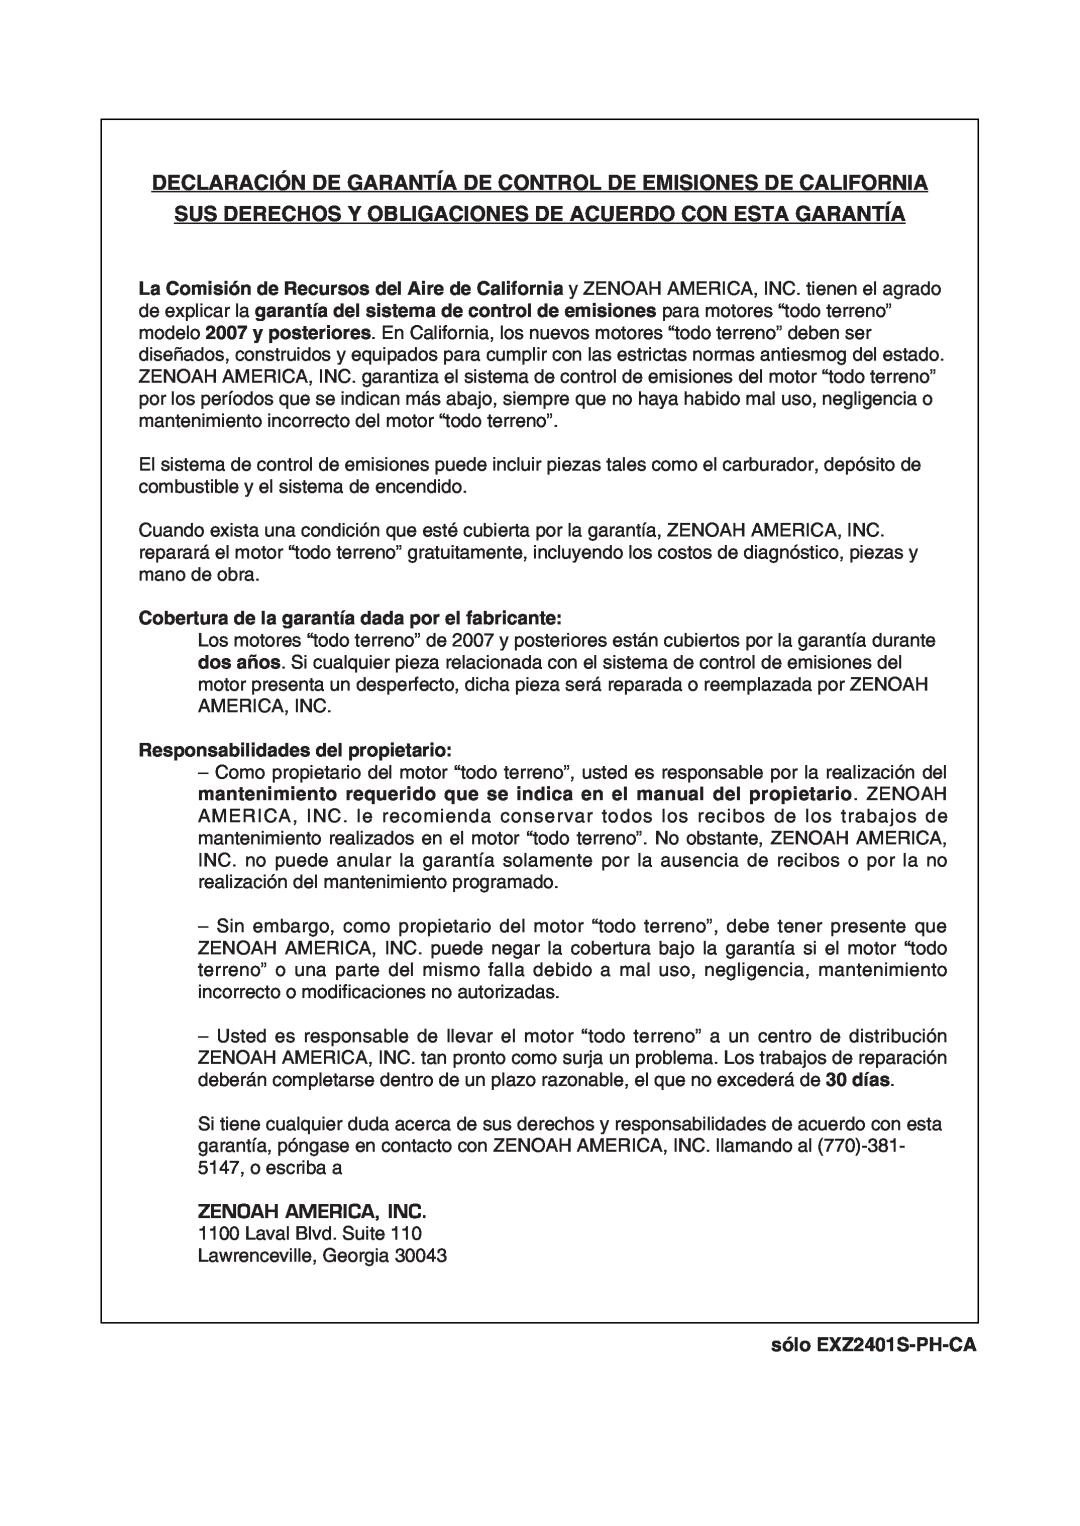 RedMax EXZ2401S-PH-CA Declaración De Garantía De Control De Emisiones De California, Responsabilidades del propietario 